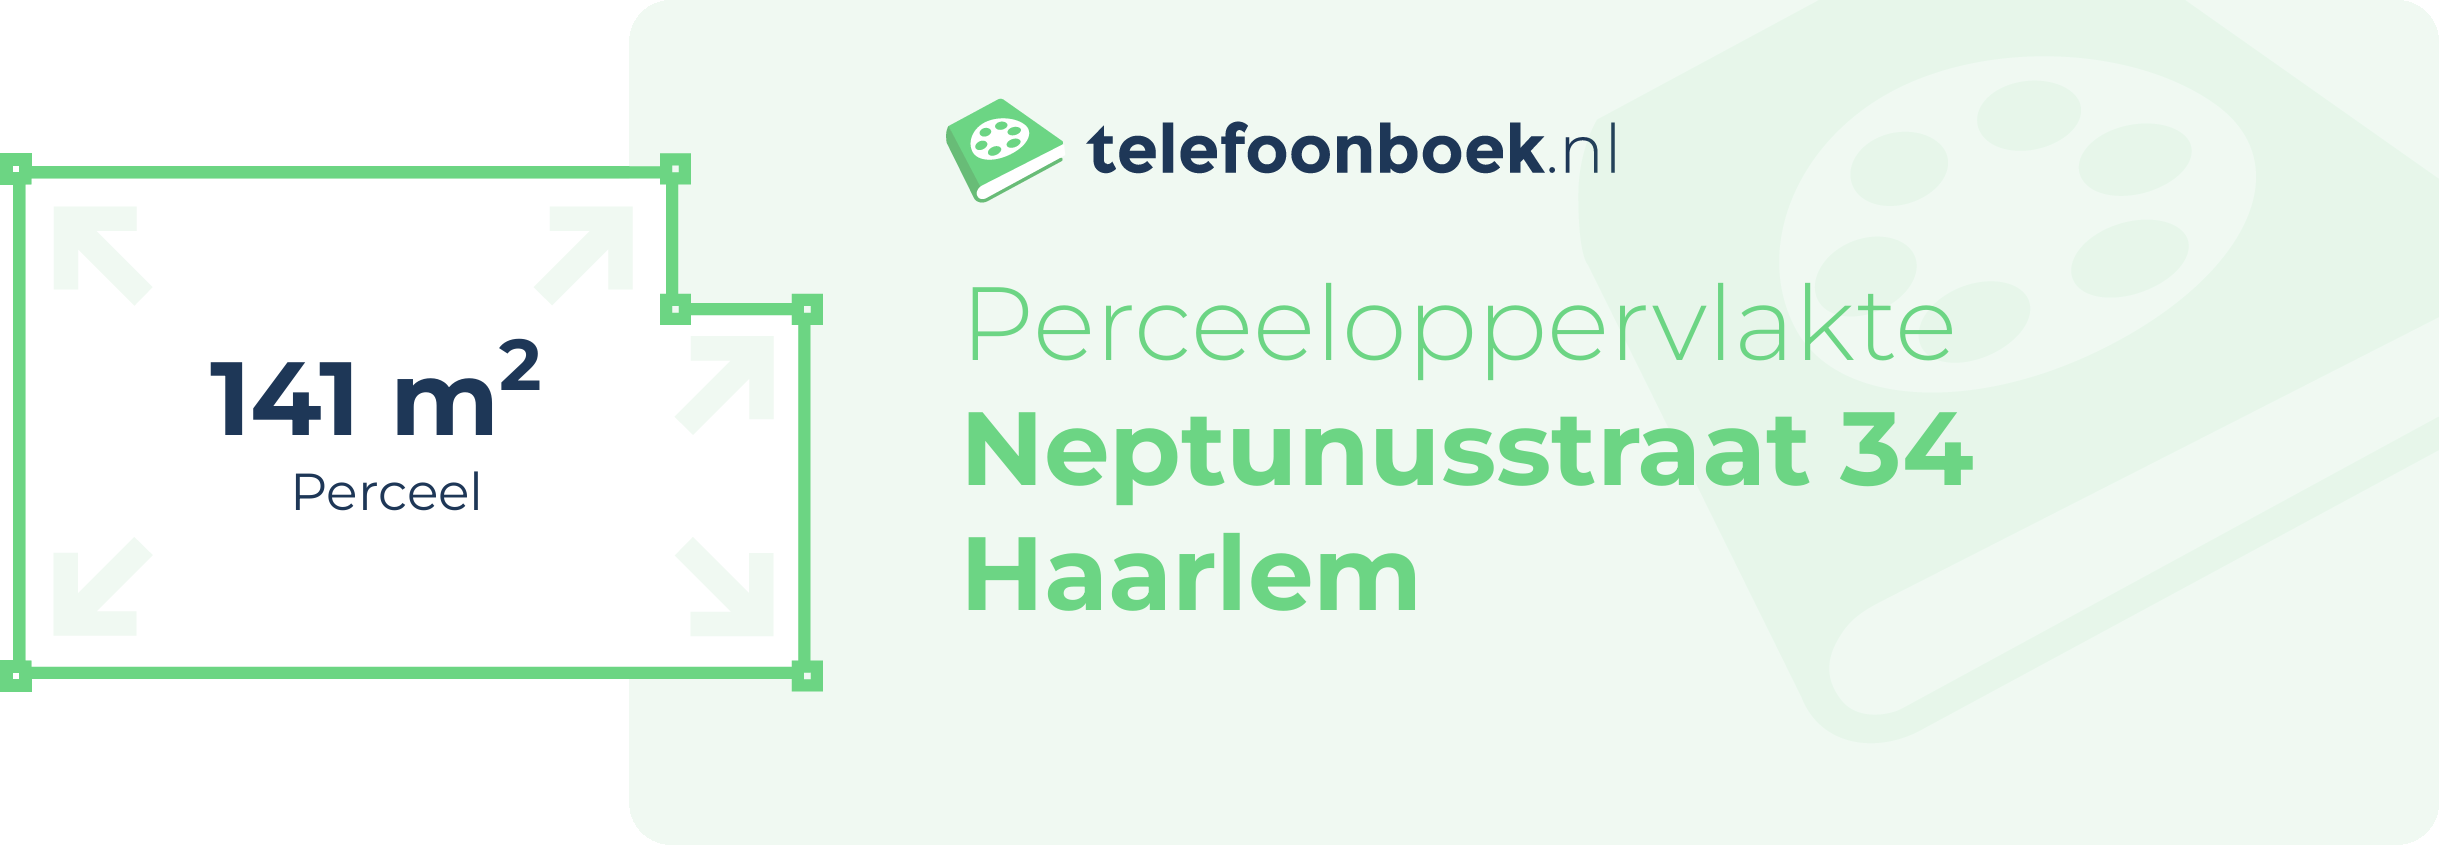 Perceeloppervlakte Neptunusstraat 34 Haarlem